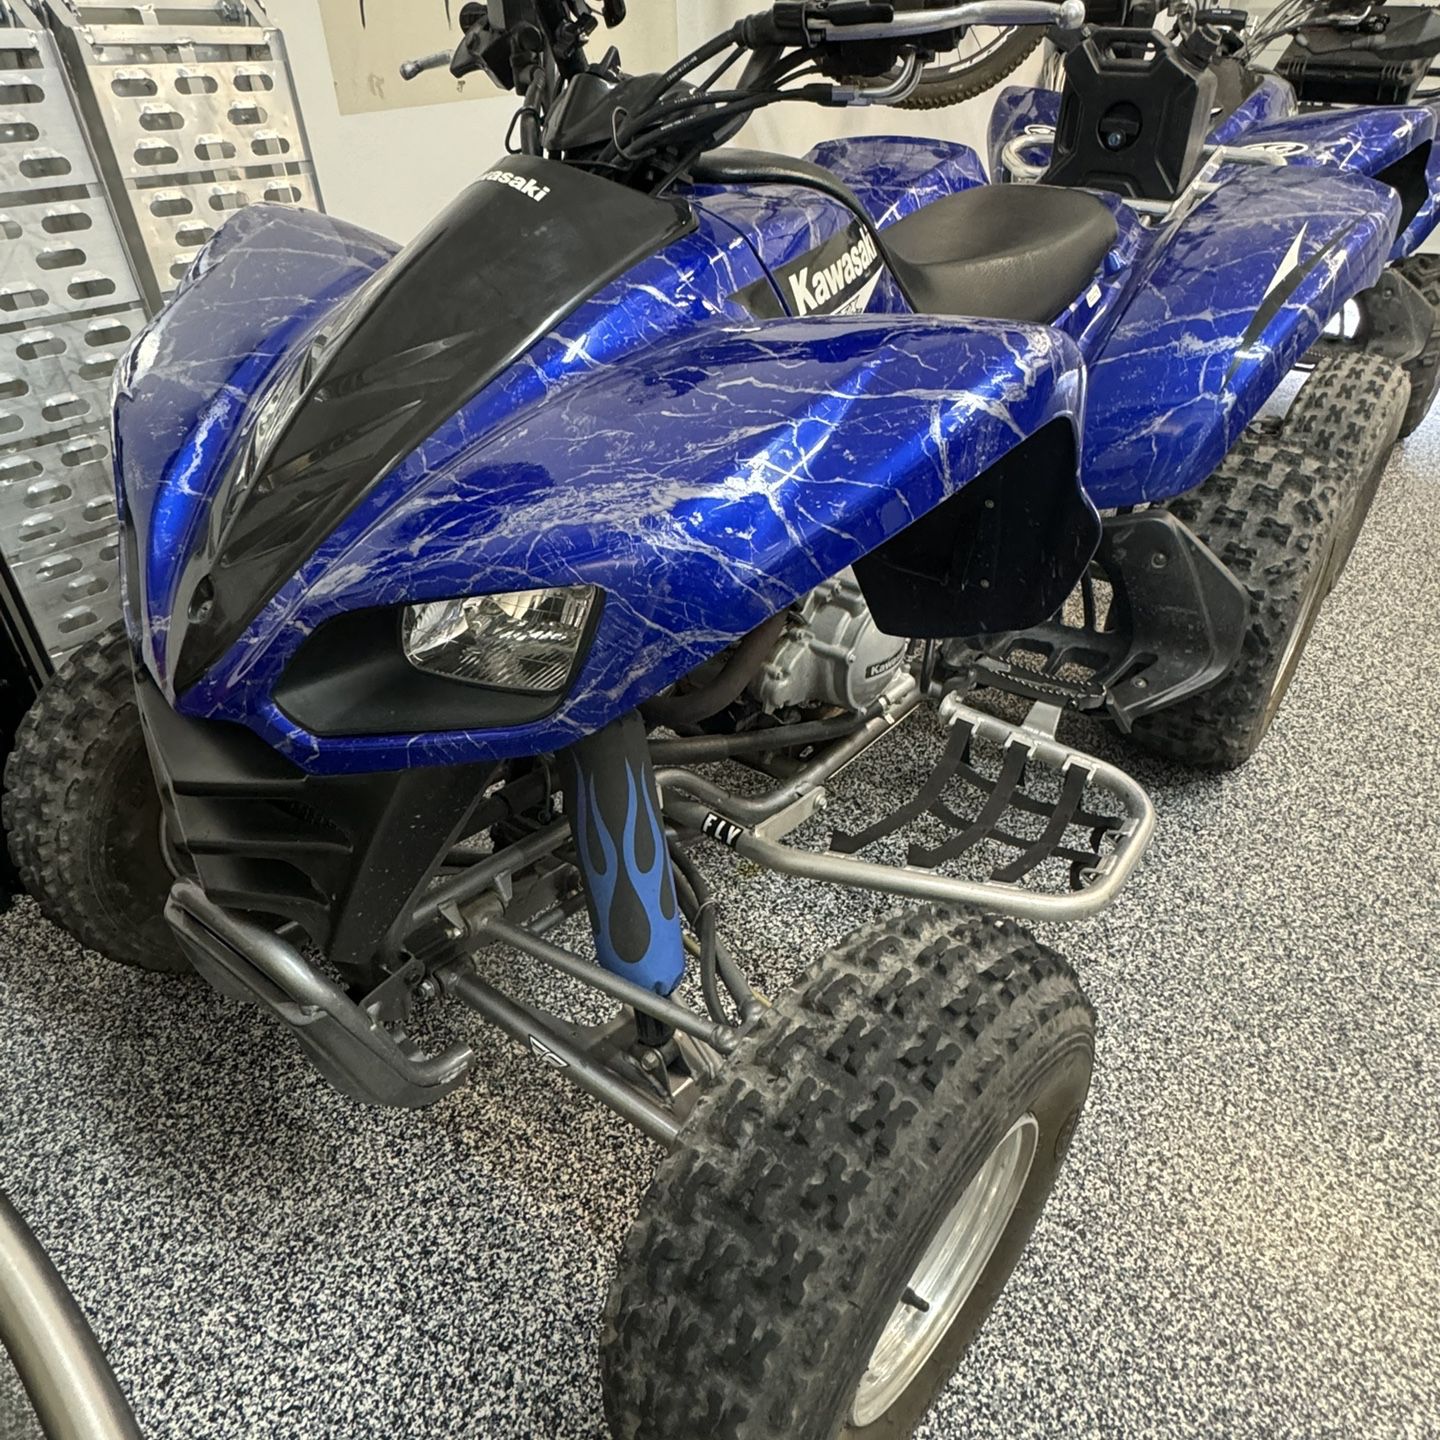 2 ATV Kawasaki KFX700 